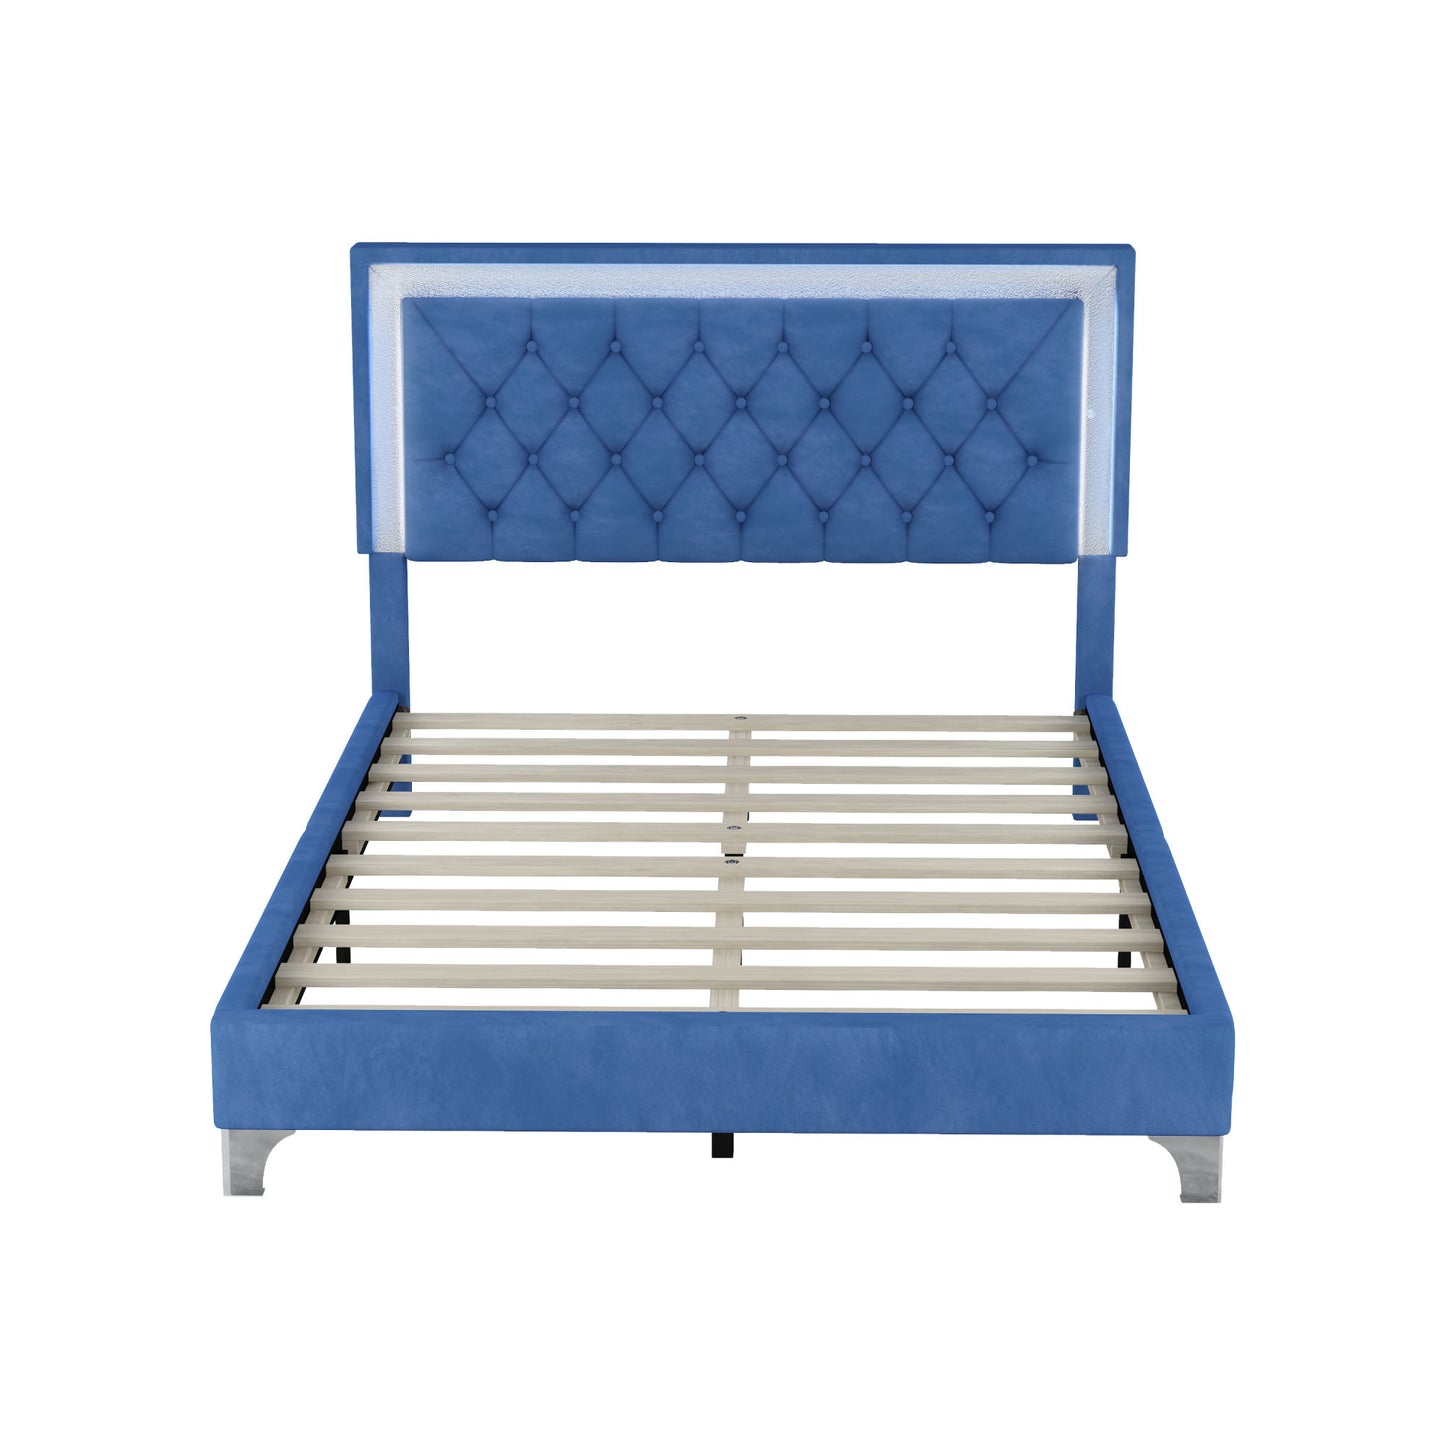 upholstered bed frame with led lights, blue